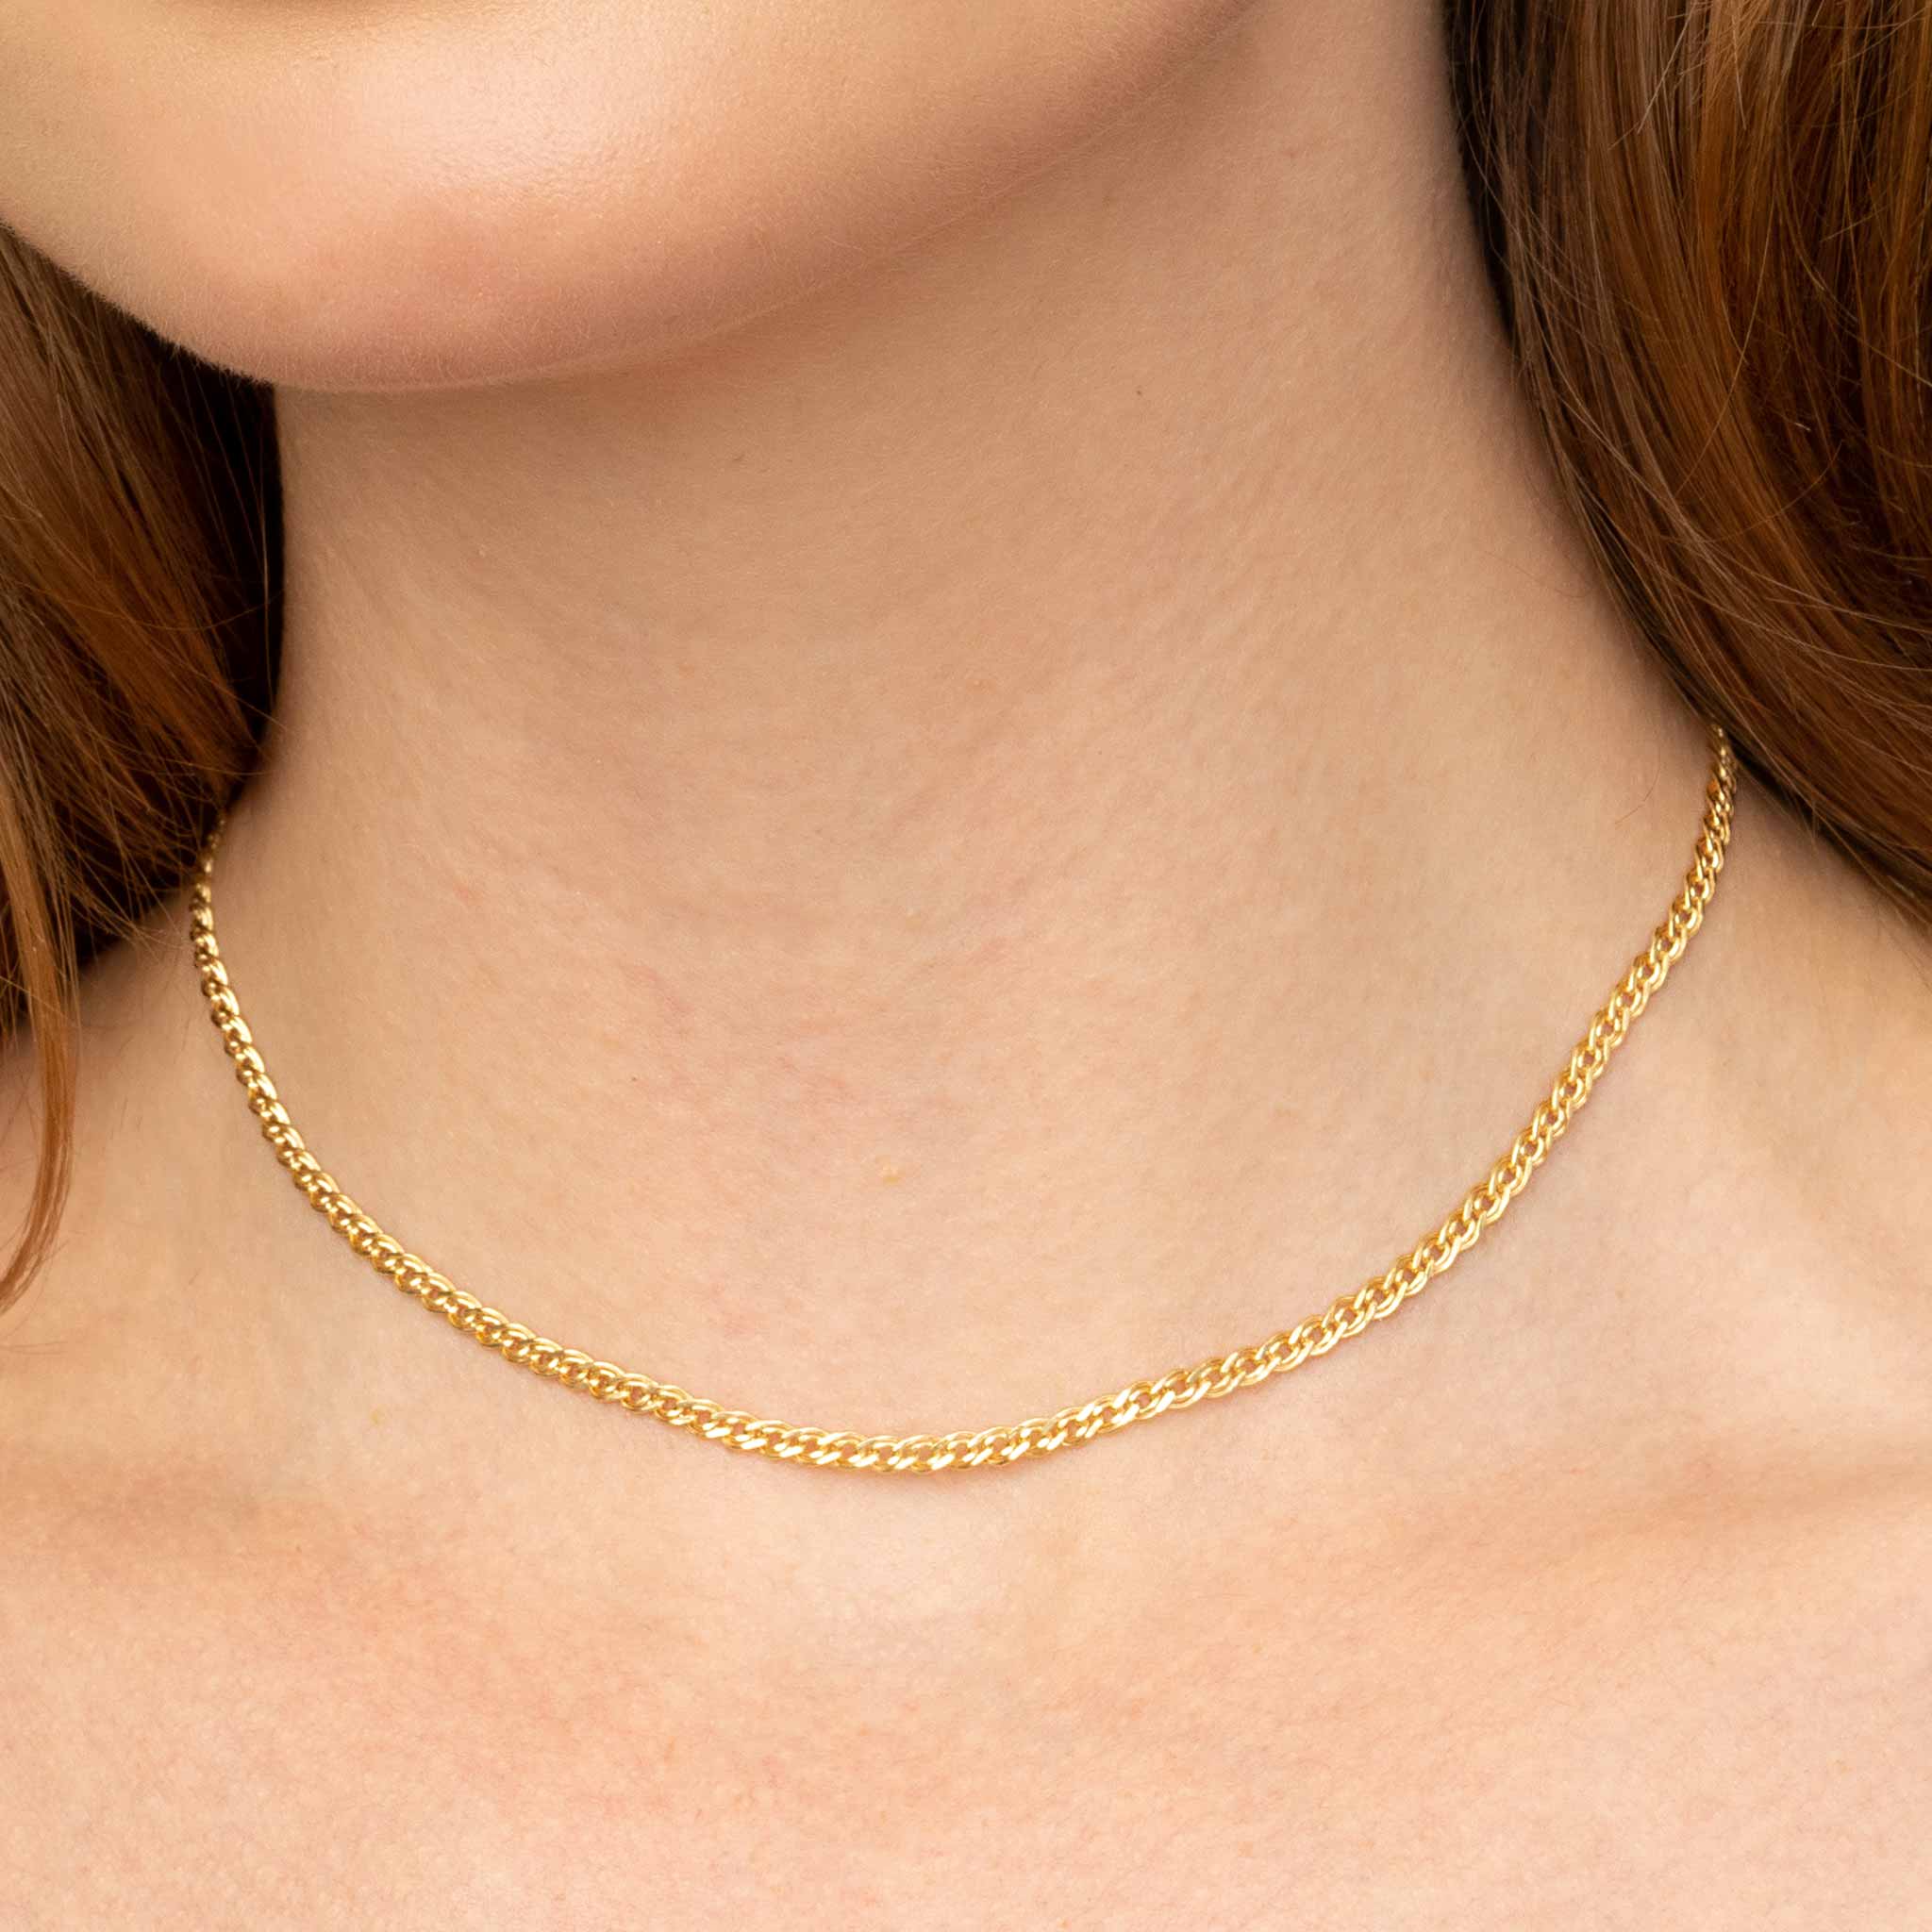 True Love's Knot Necklace – Cece Jewellery